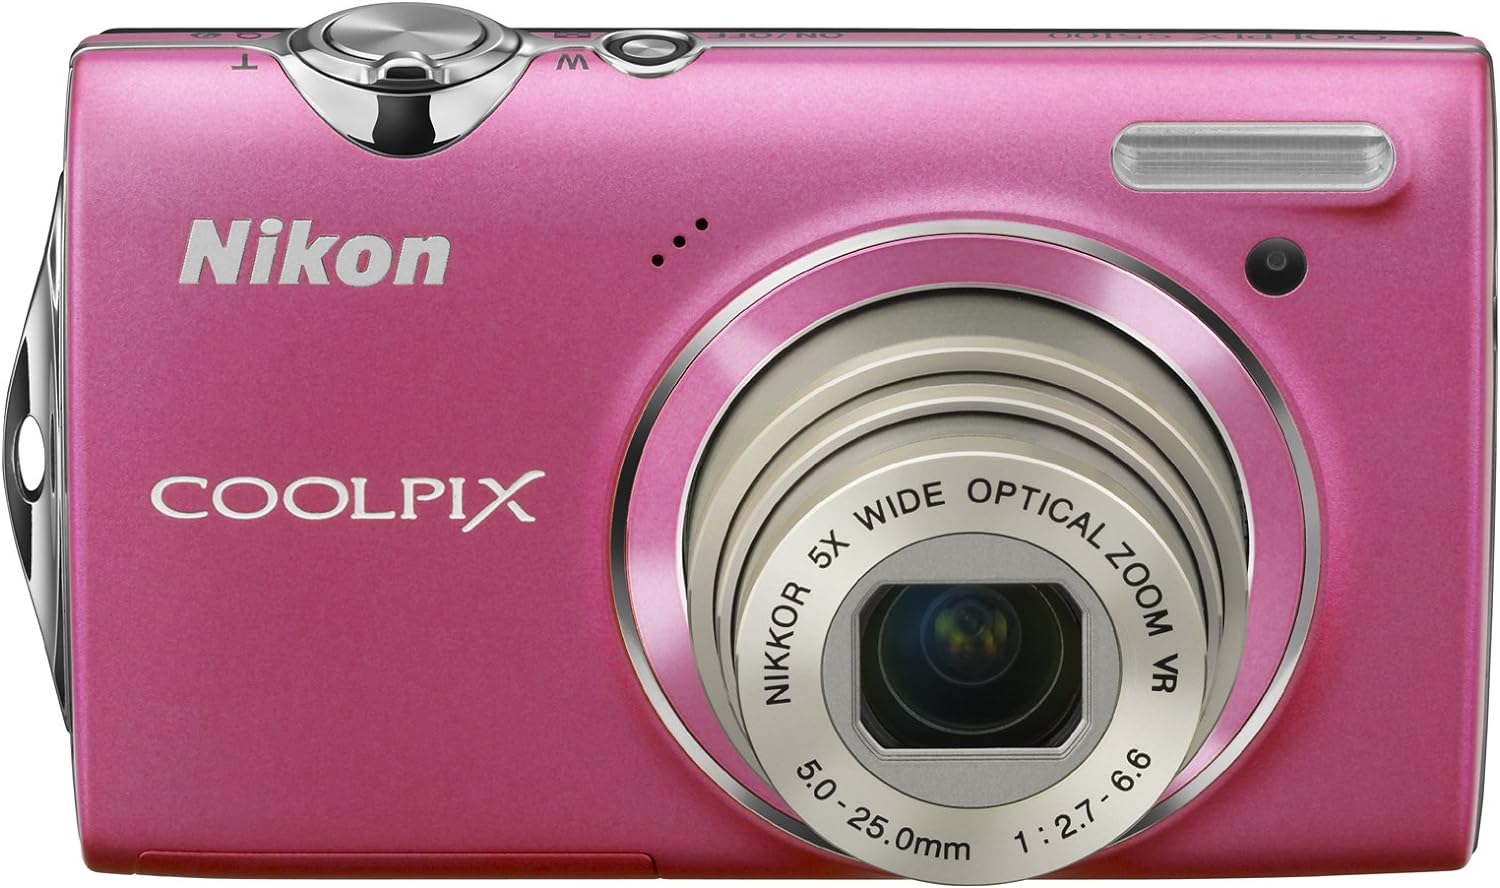 【中古】Nikon デジタルカメラ COOLPIX (クールピクス) S5100 ホットピンク S5100PK 1220万画素 光学5倍ズーム 広角28mm 2.7型液晶